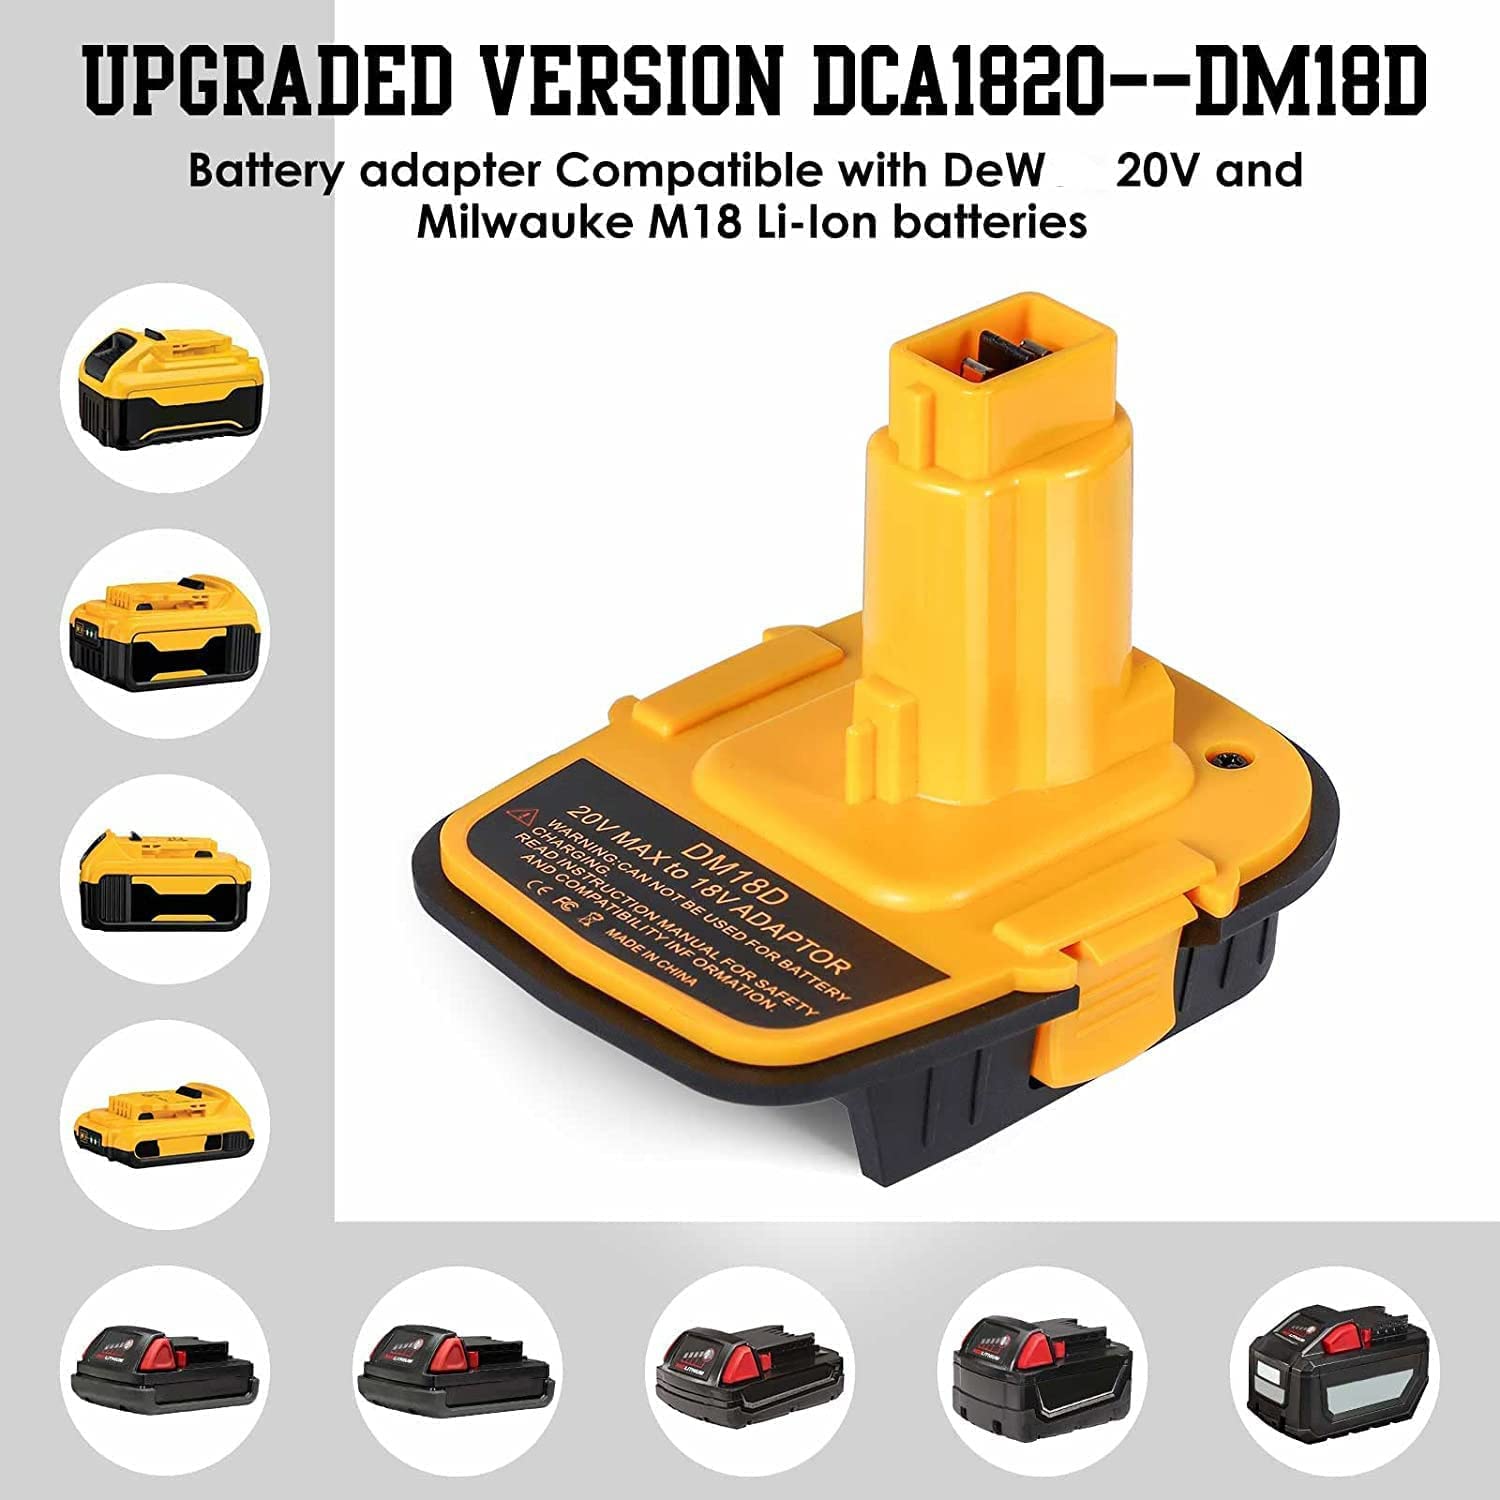 Adaptador de bateria DM18D com porta USB